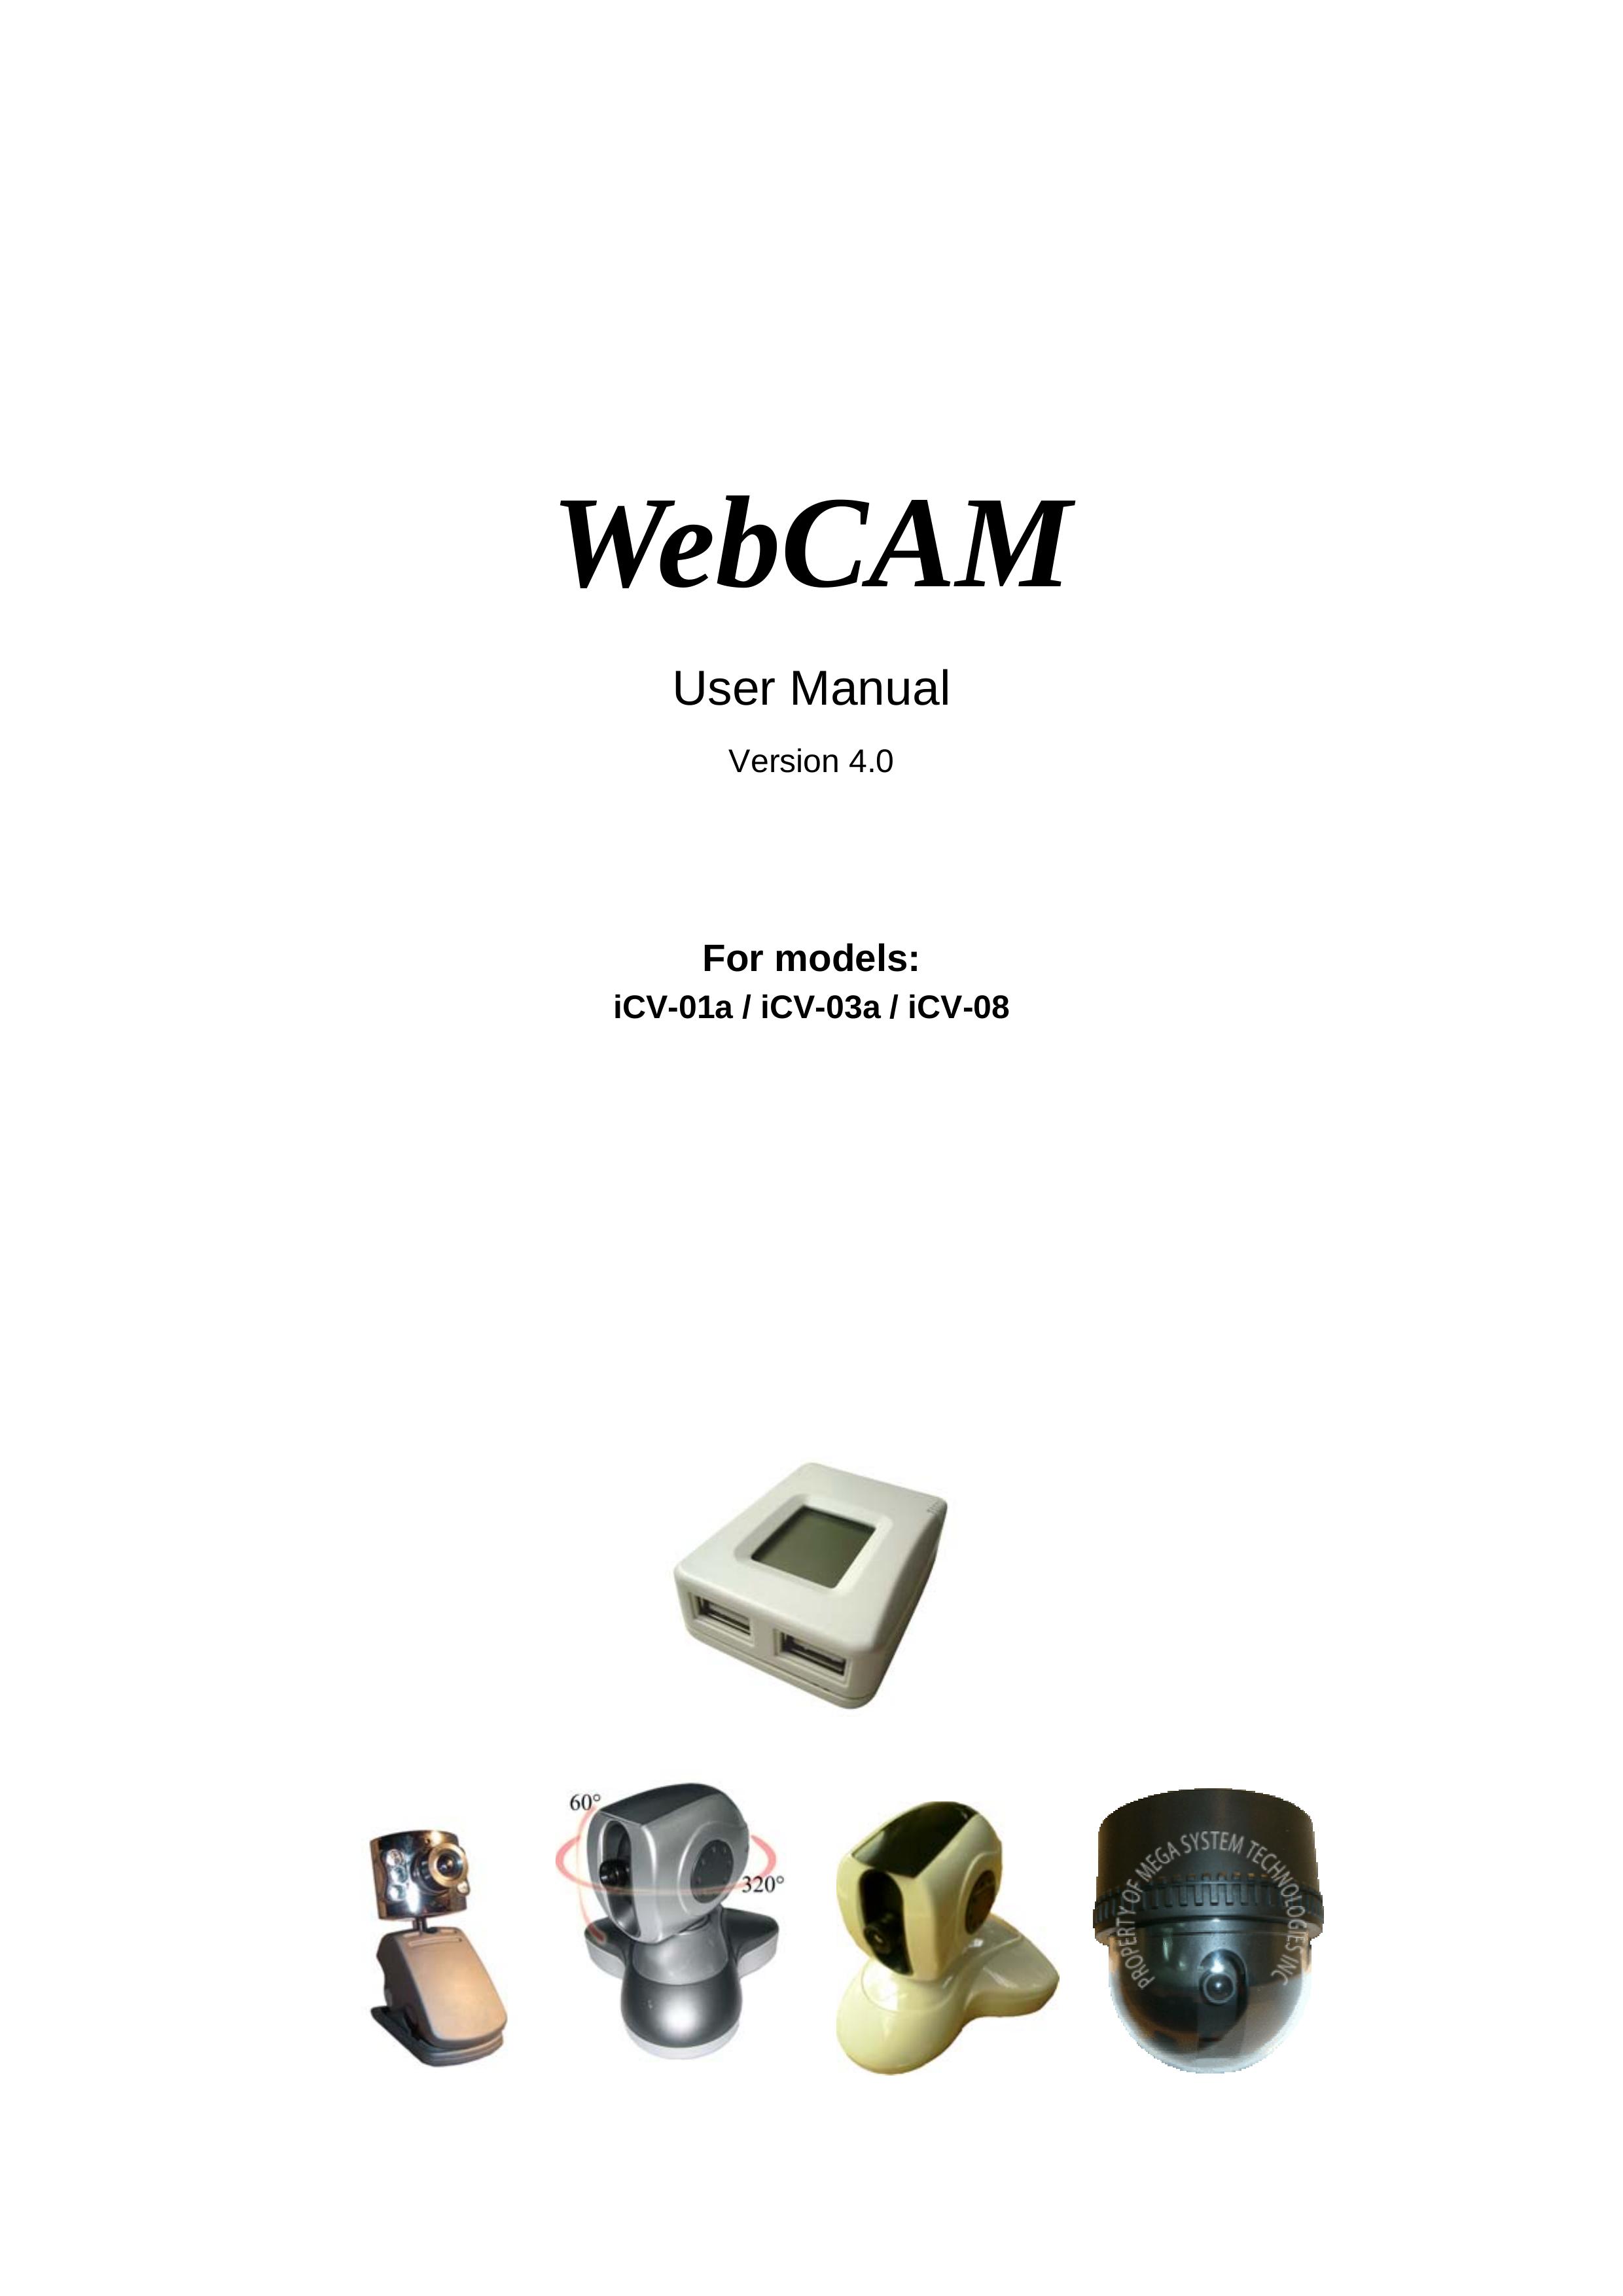 3Com iCV-01a Digital Camera User Manual (Page 1)